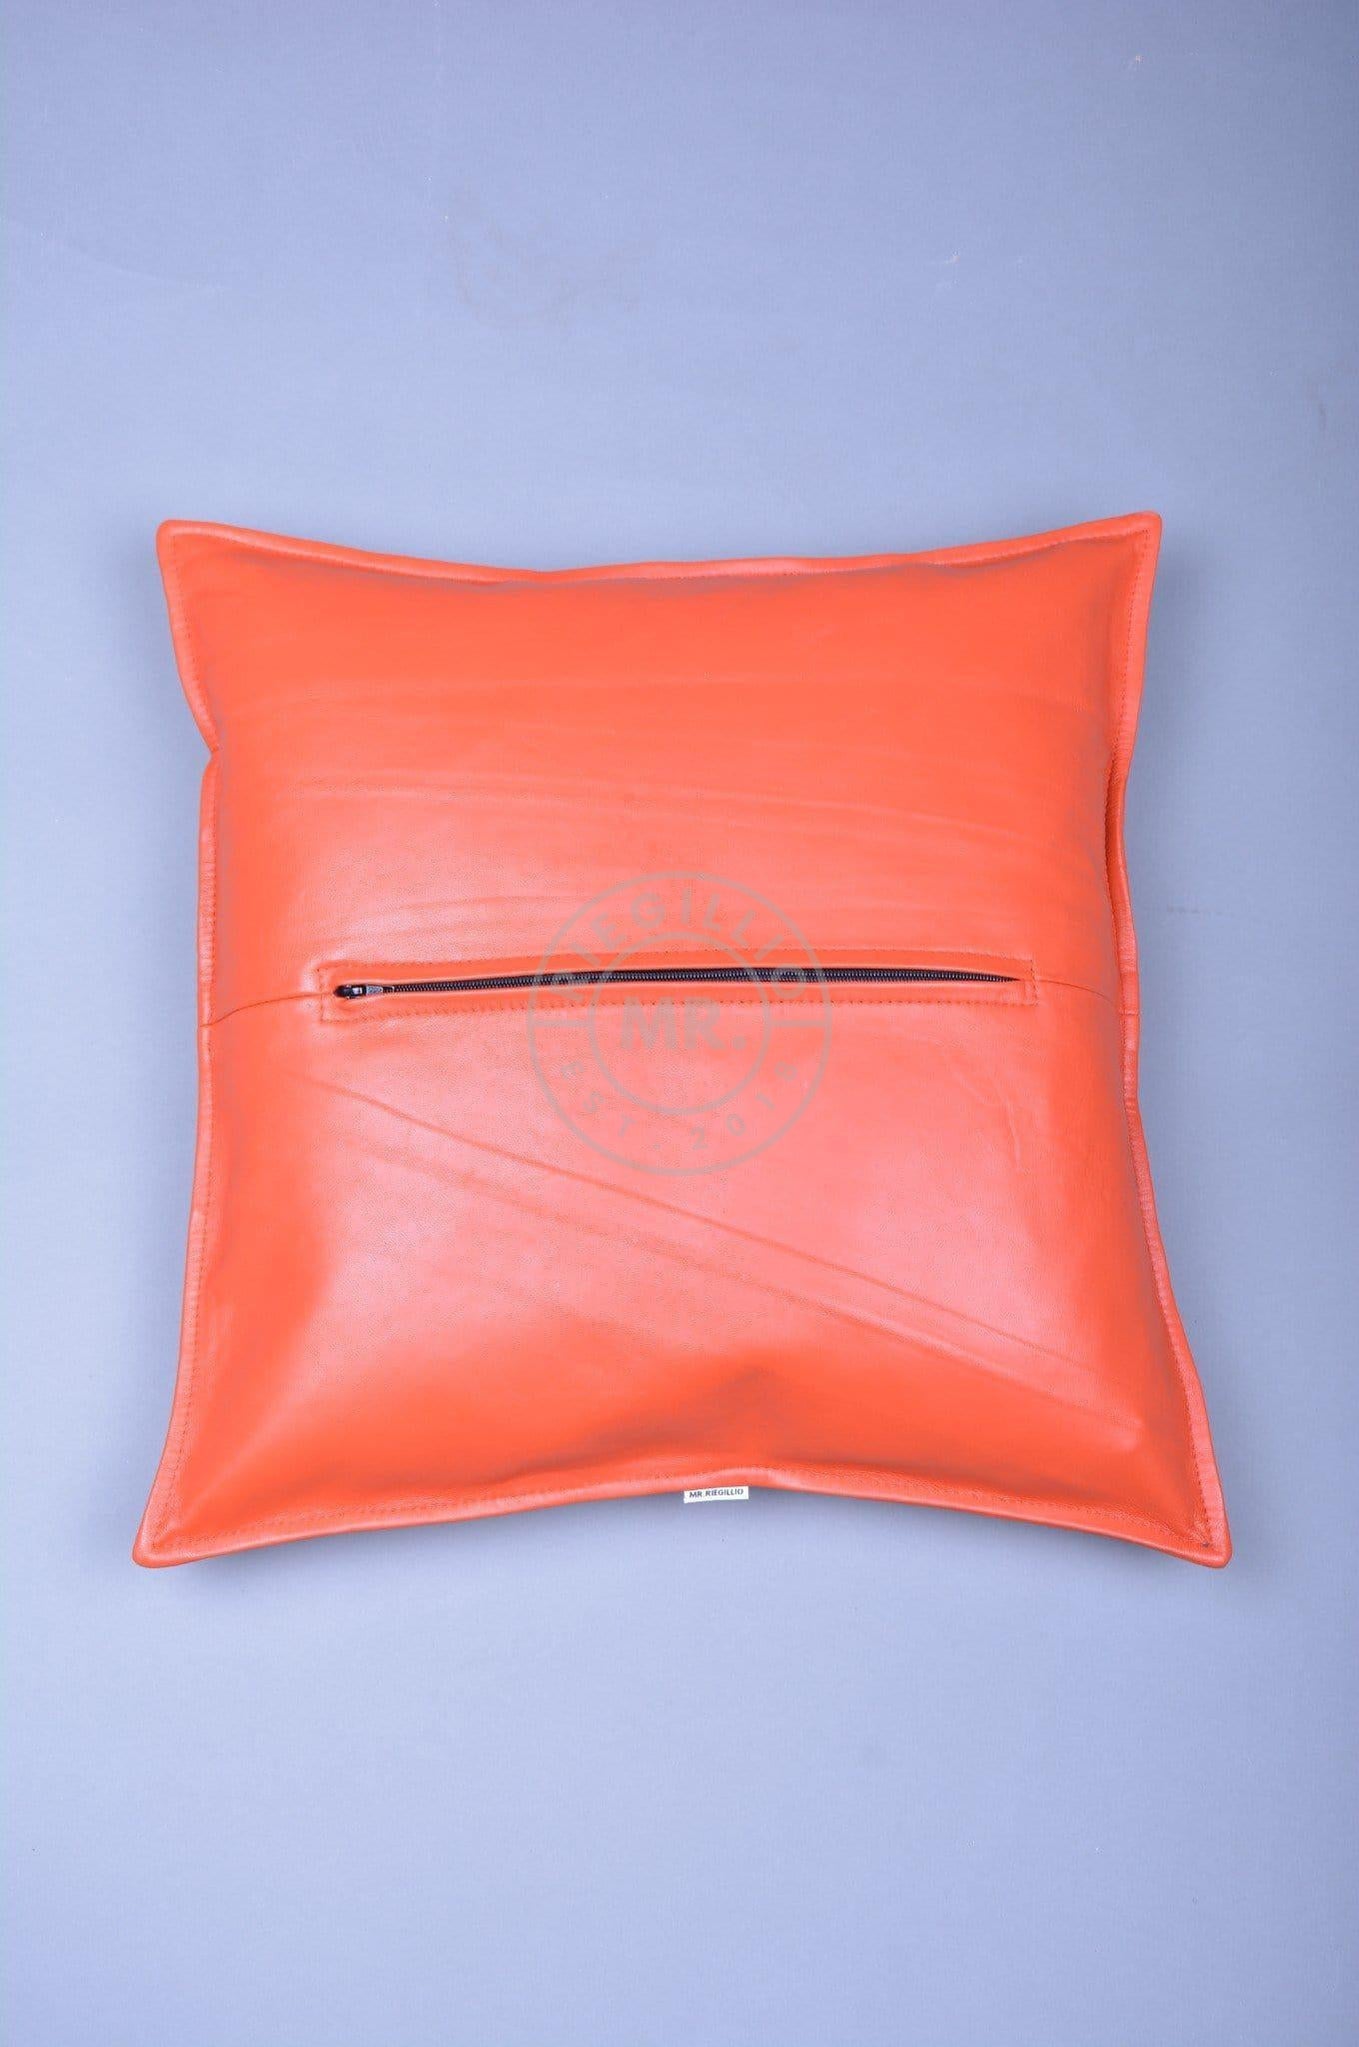 Orange Leather Pillow at MR. Riegillio